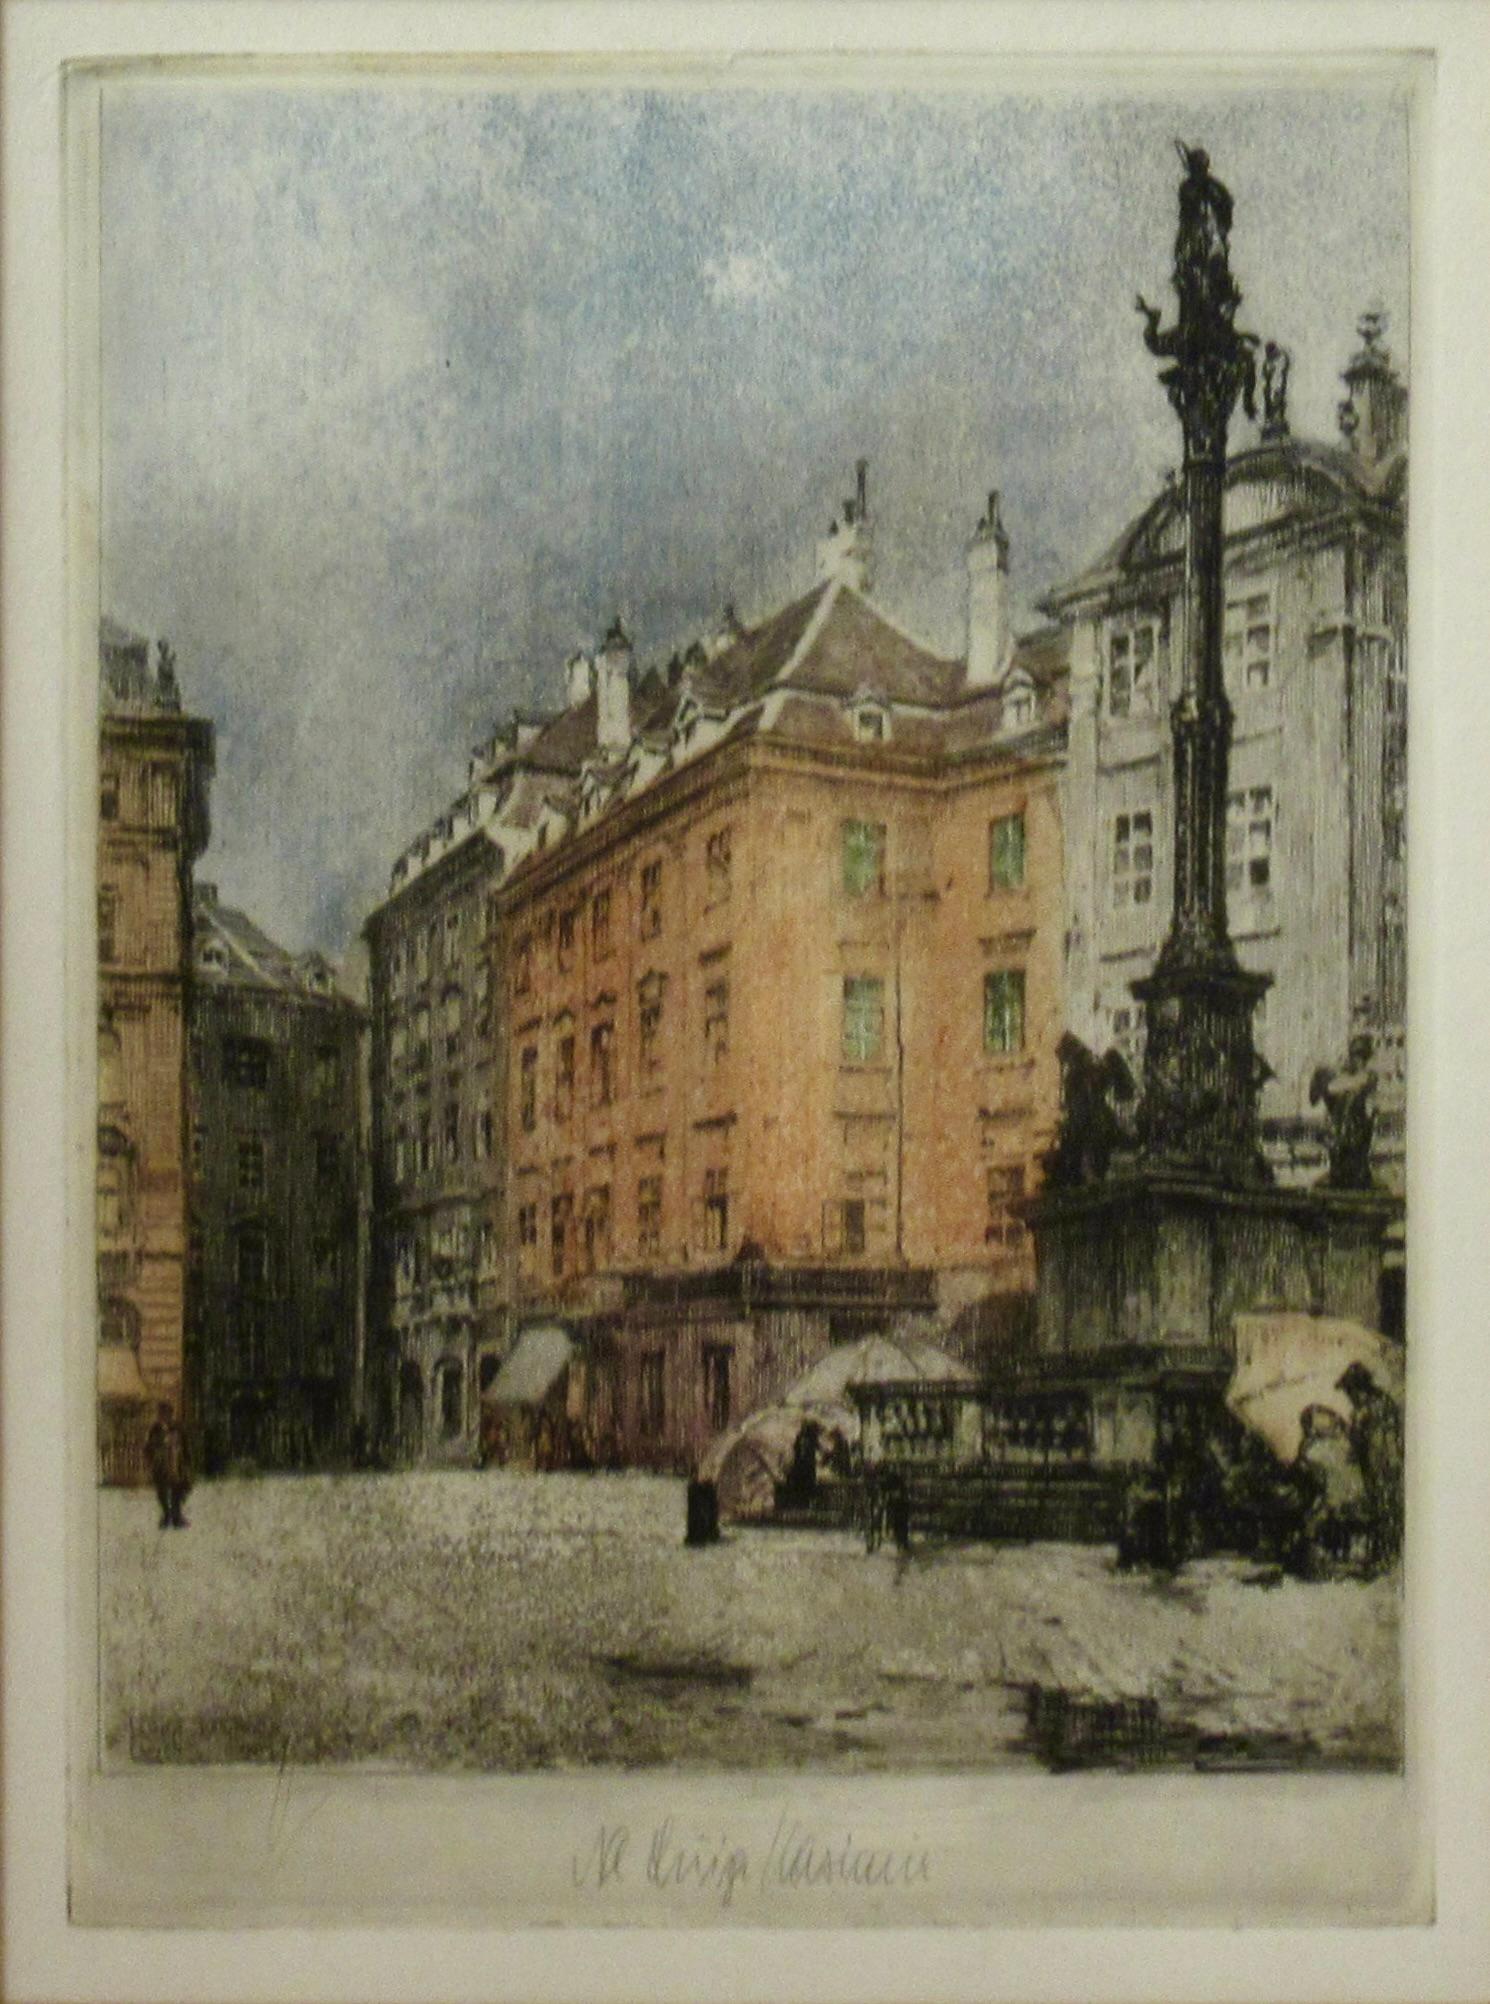 Vienna - Print by Luigi Kasimir